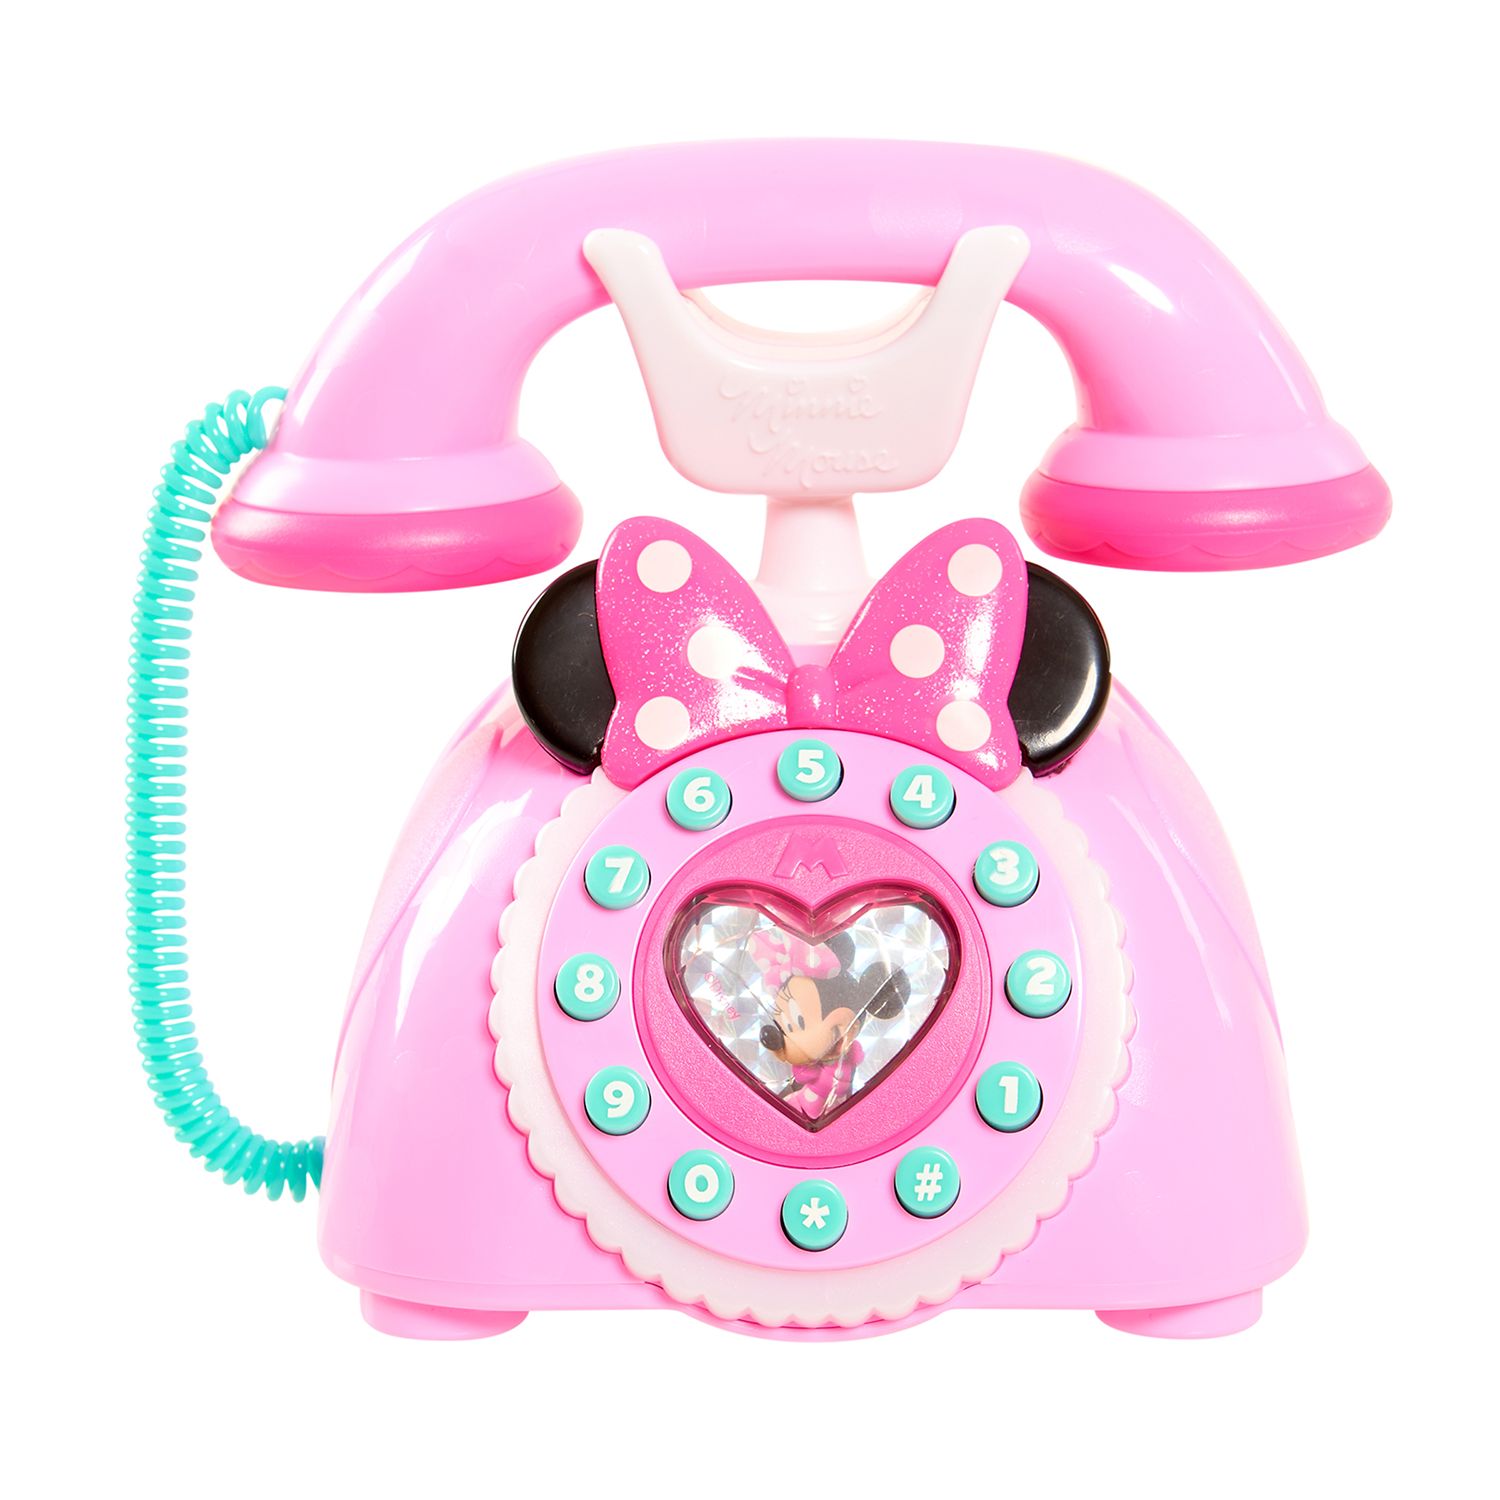 Купить розовый телефон. Пылесос Микки Маус. Игрушки для девочек. Игрушечный телефончик. Розовые игрушки для девочек.